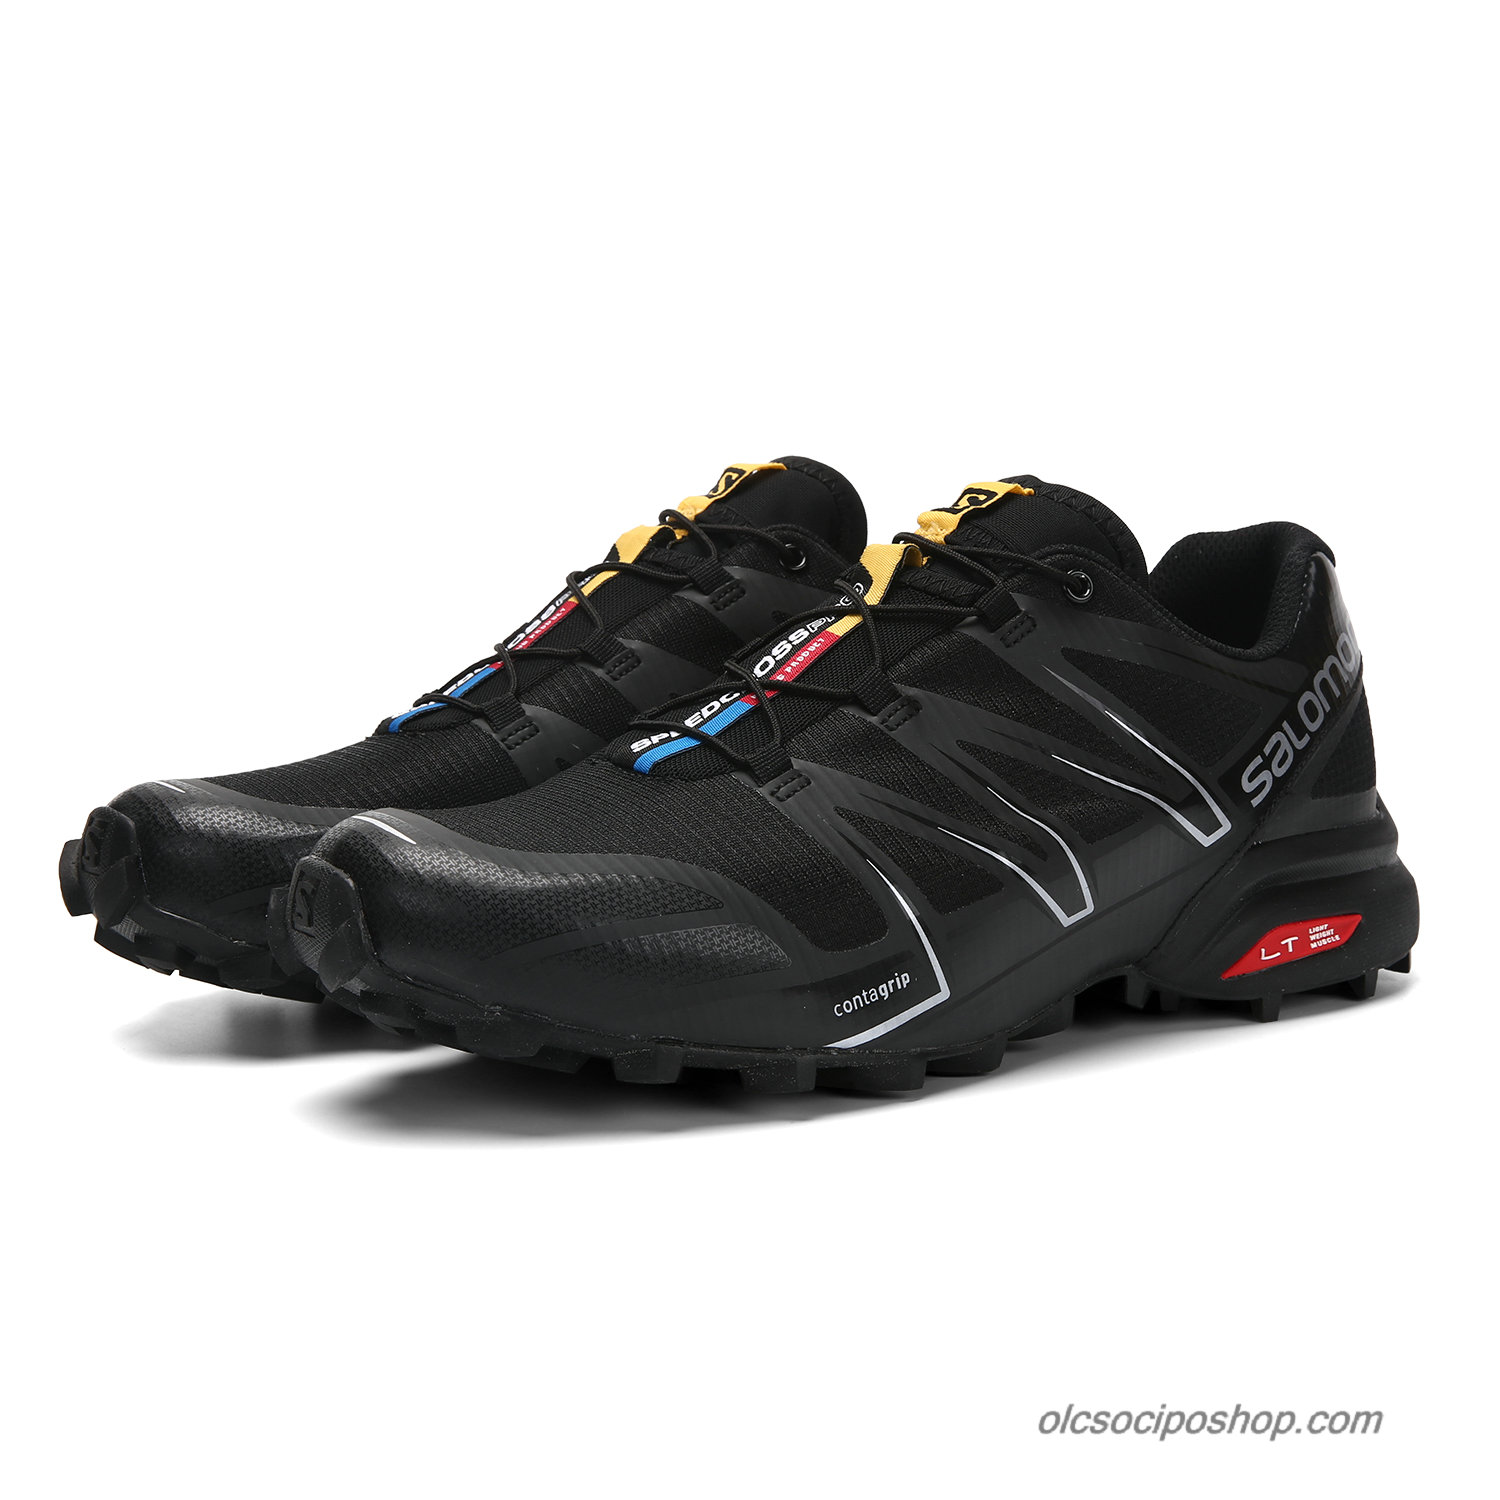 Férfi Salomon Speedcross PRO Fekete/Fehér Cipők - Kattintásra bezárul